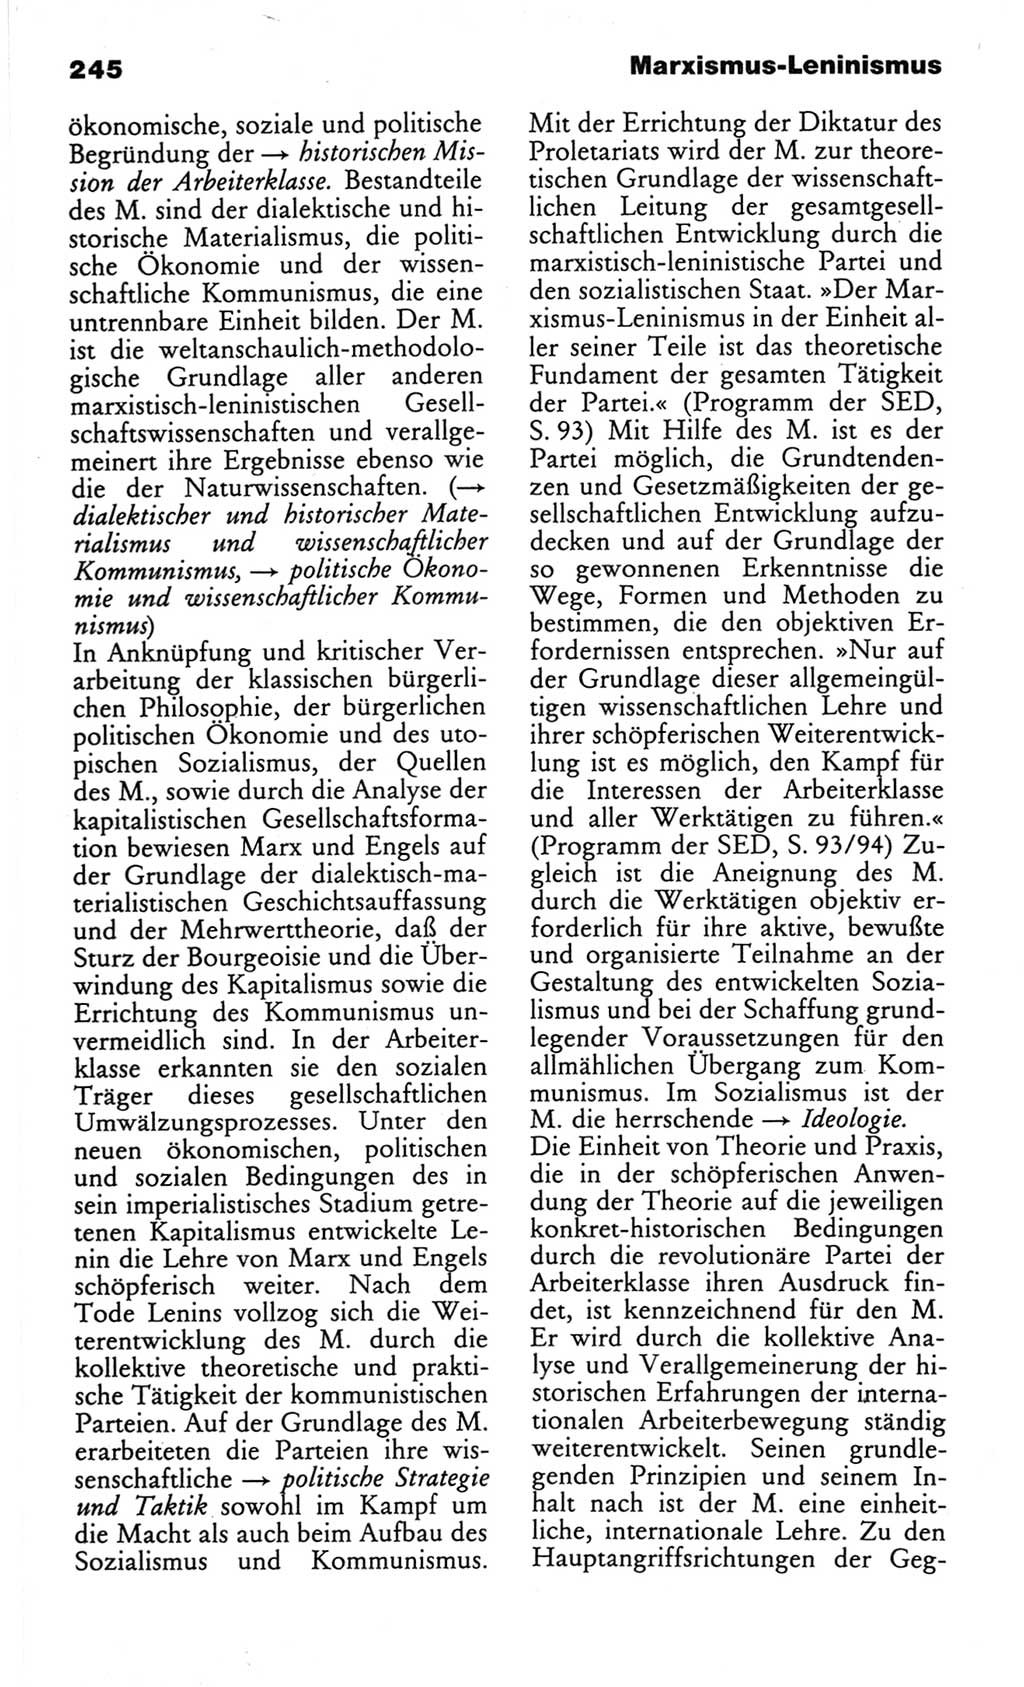 Wörterbuch des wissenschaftlichen Kommunismus [Deutsche Demokratische Republik (DDR)] 1982, Seite 245 (Wb. wiss. Komm. DDR 1982, S. 245)